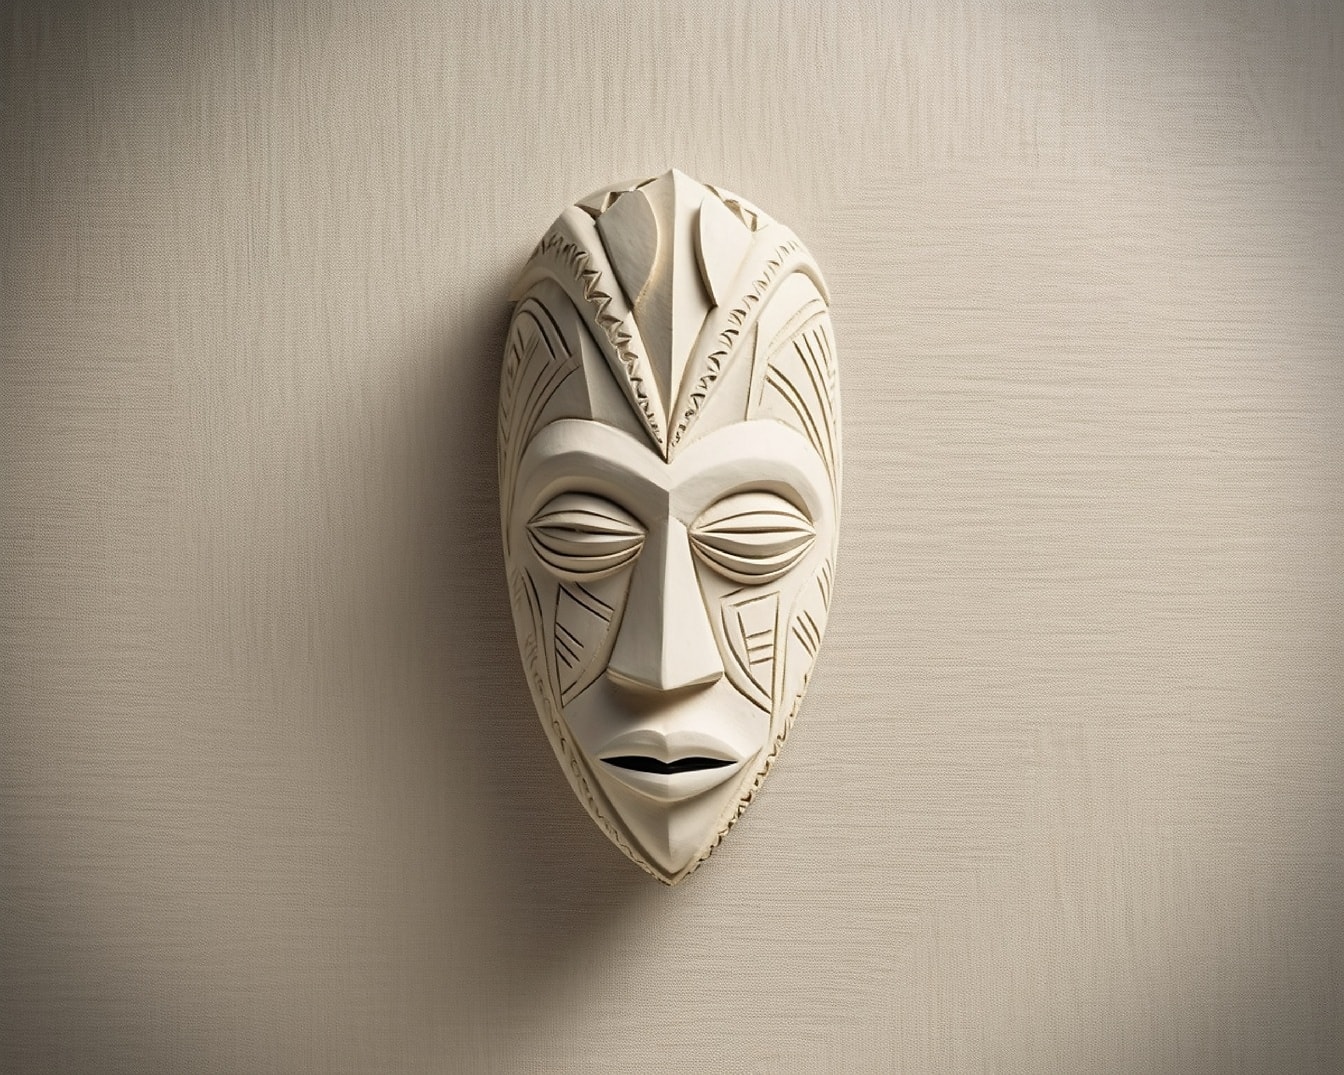 Резьба ручной работы деревянная маска для лица на бежевой стене